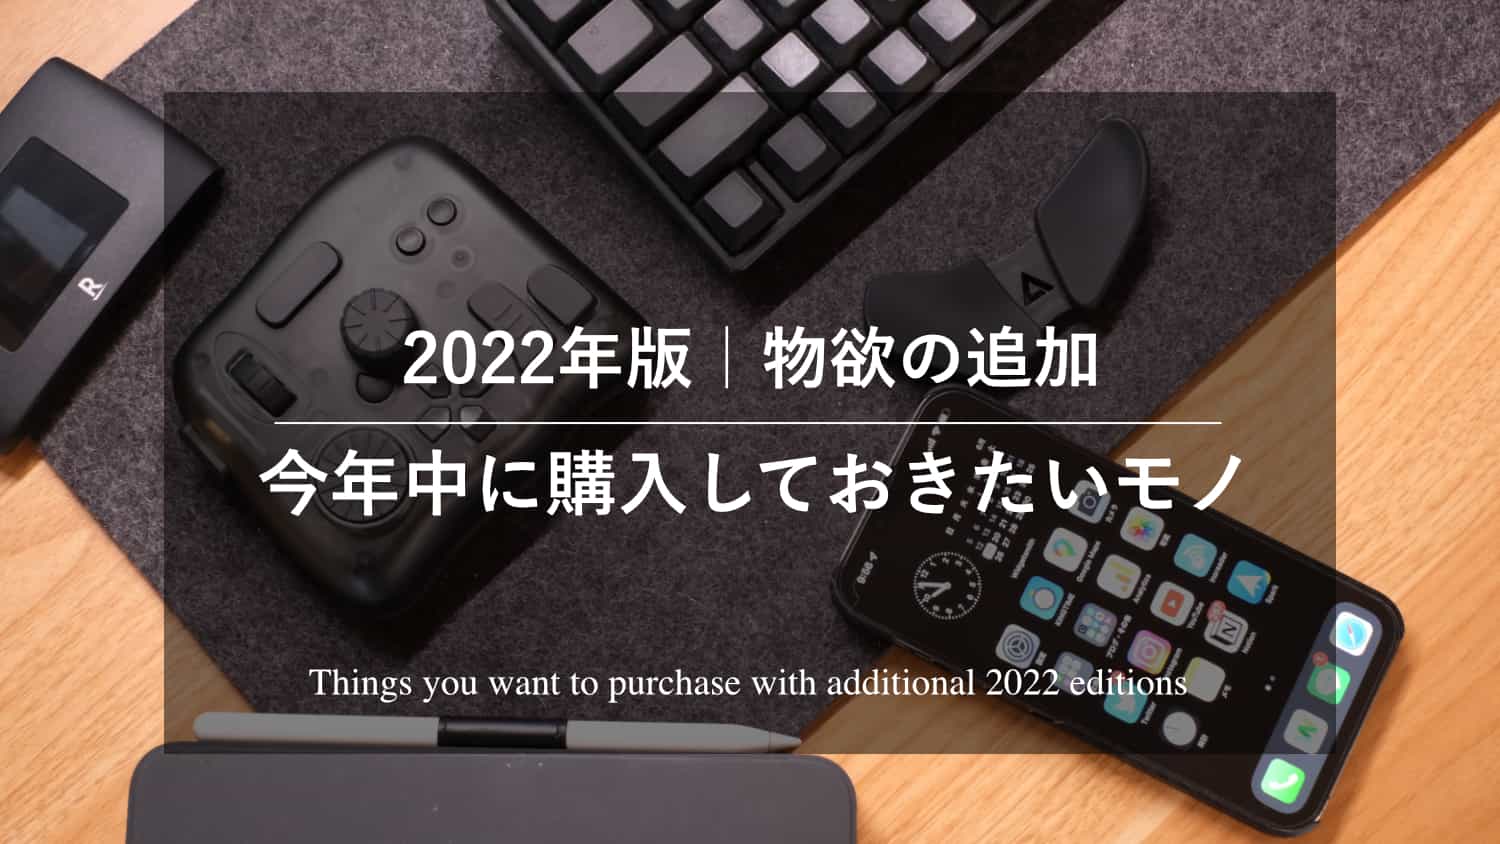 【2022年版】物欲の追加。今年中に購入しておきたいモノ